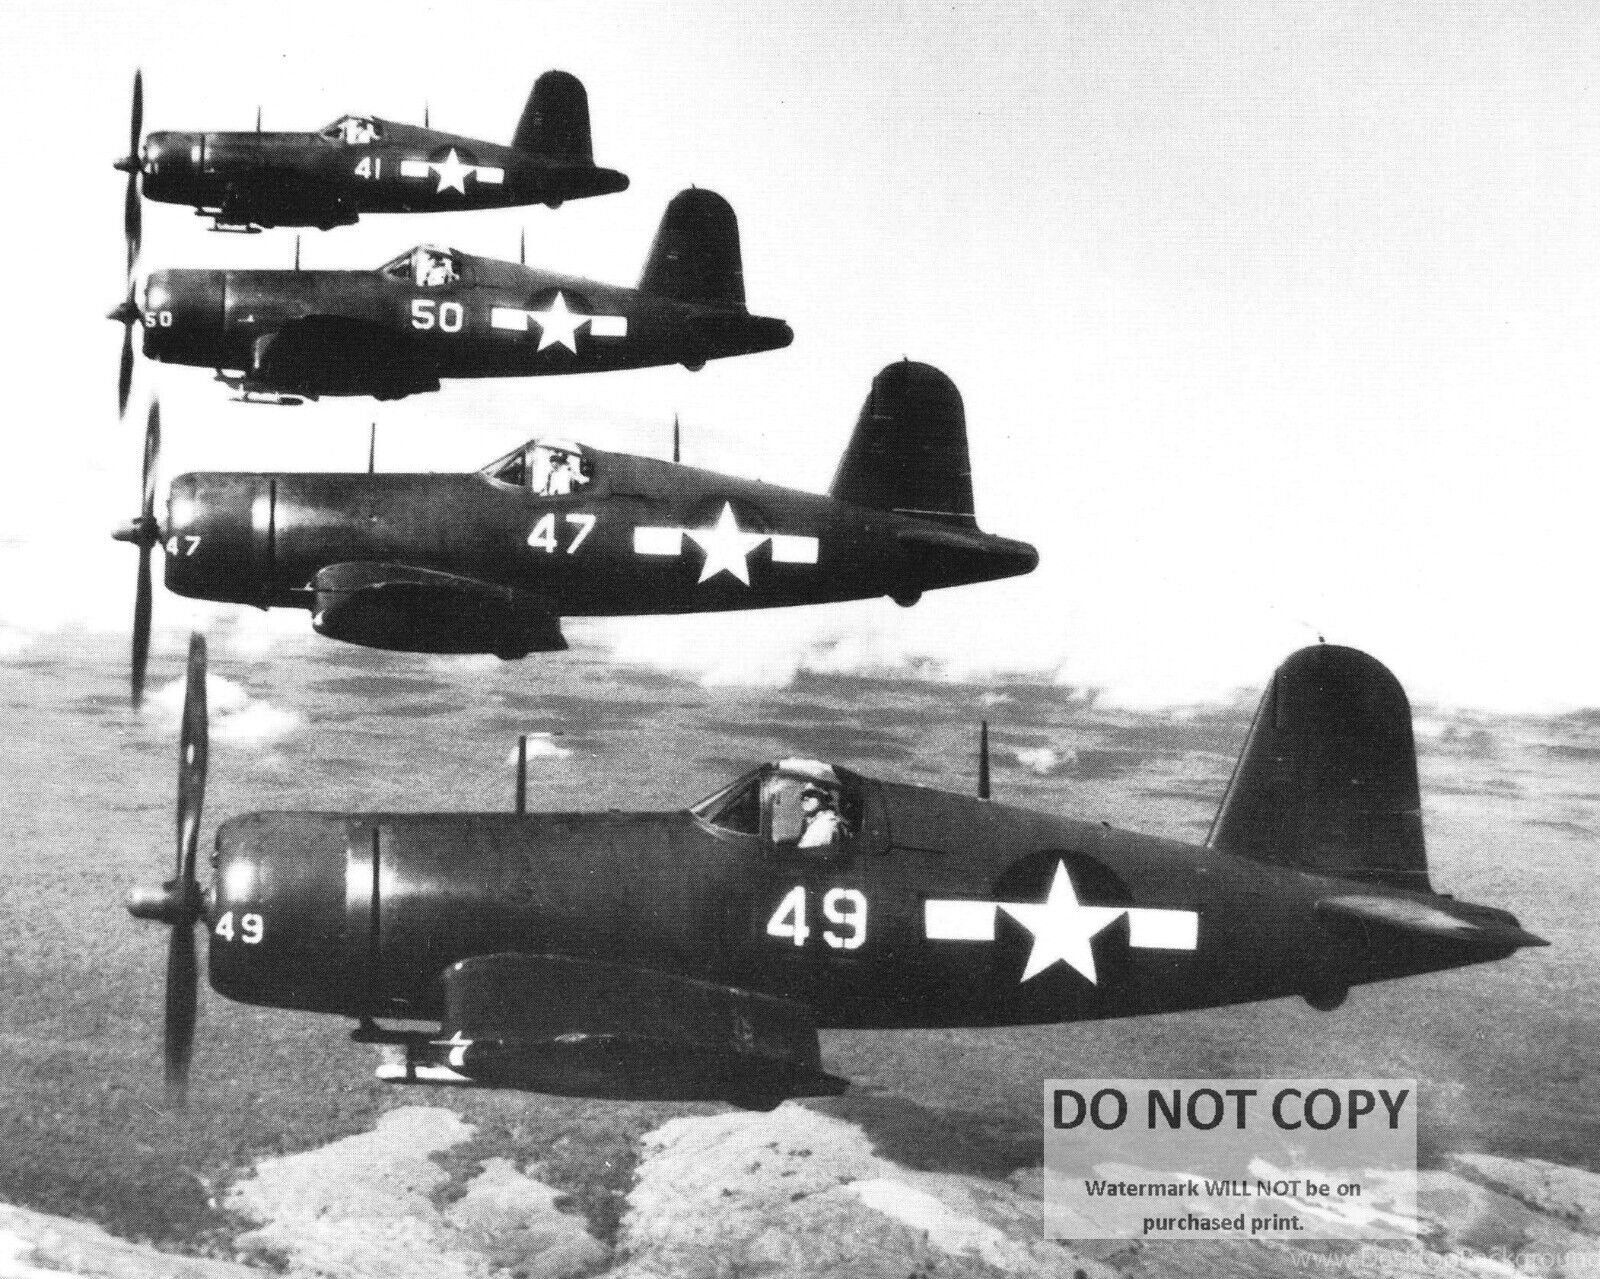 U.S. NAVY F4U CORSAIR FIGHTERS IN FLIGHT OVER MAUI 1945 - 8X10 PHOTO (WW191)